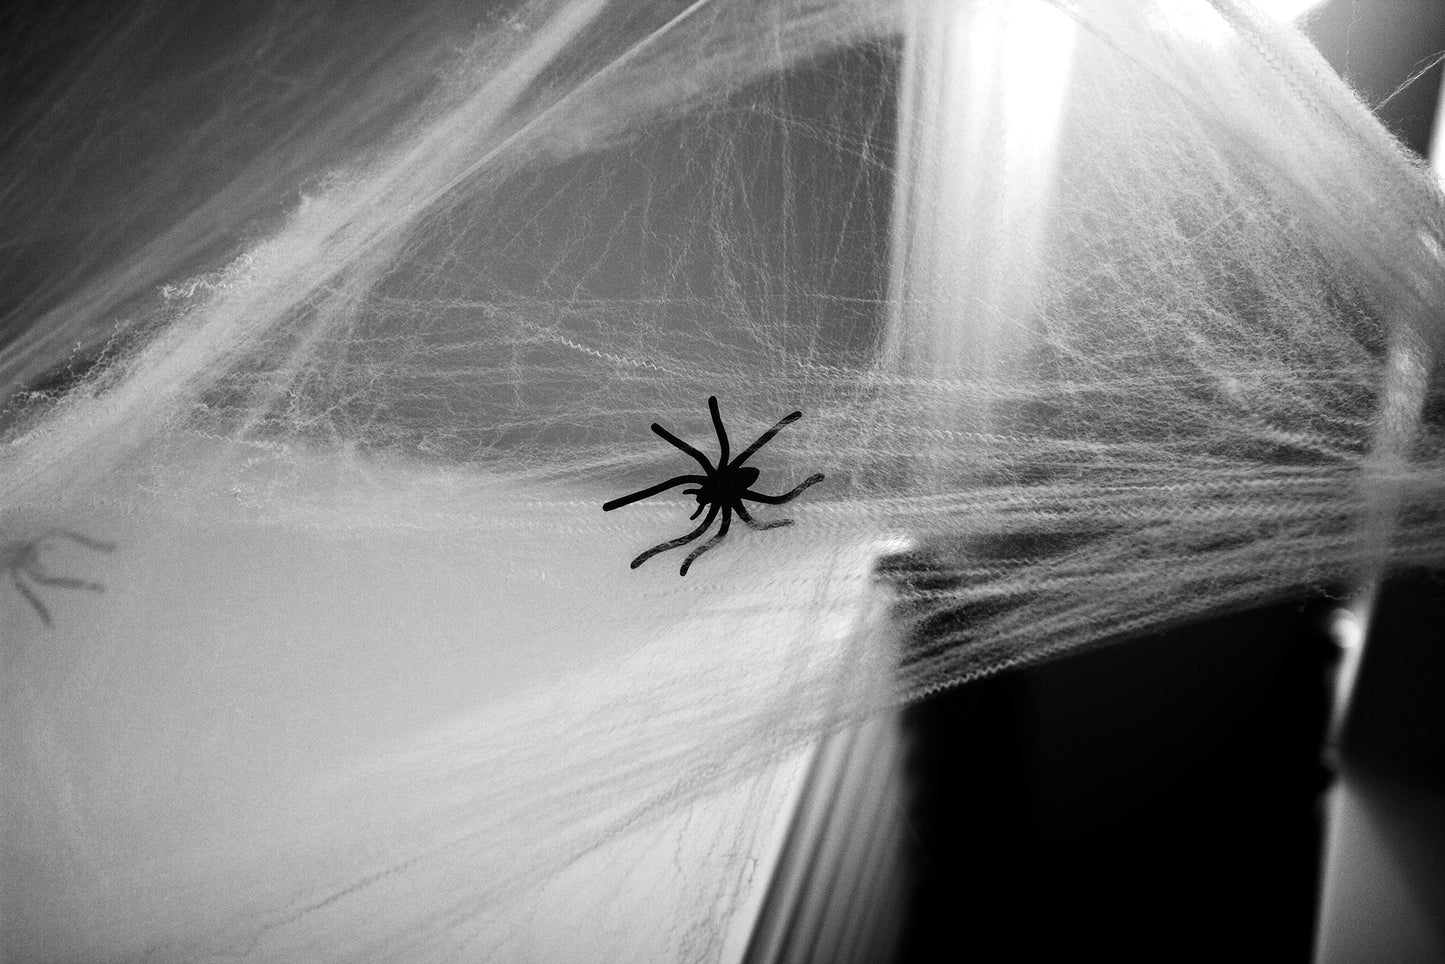 kidz-stuff-online - Stretchable Spider Webs